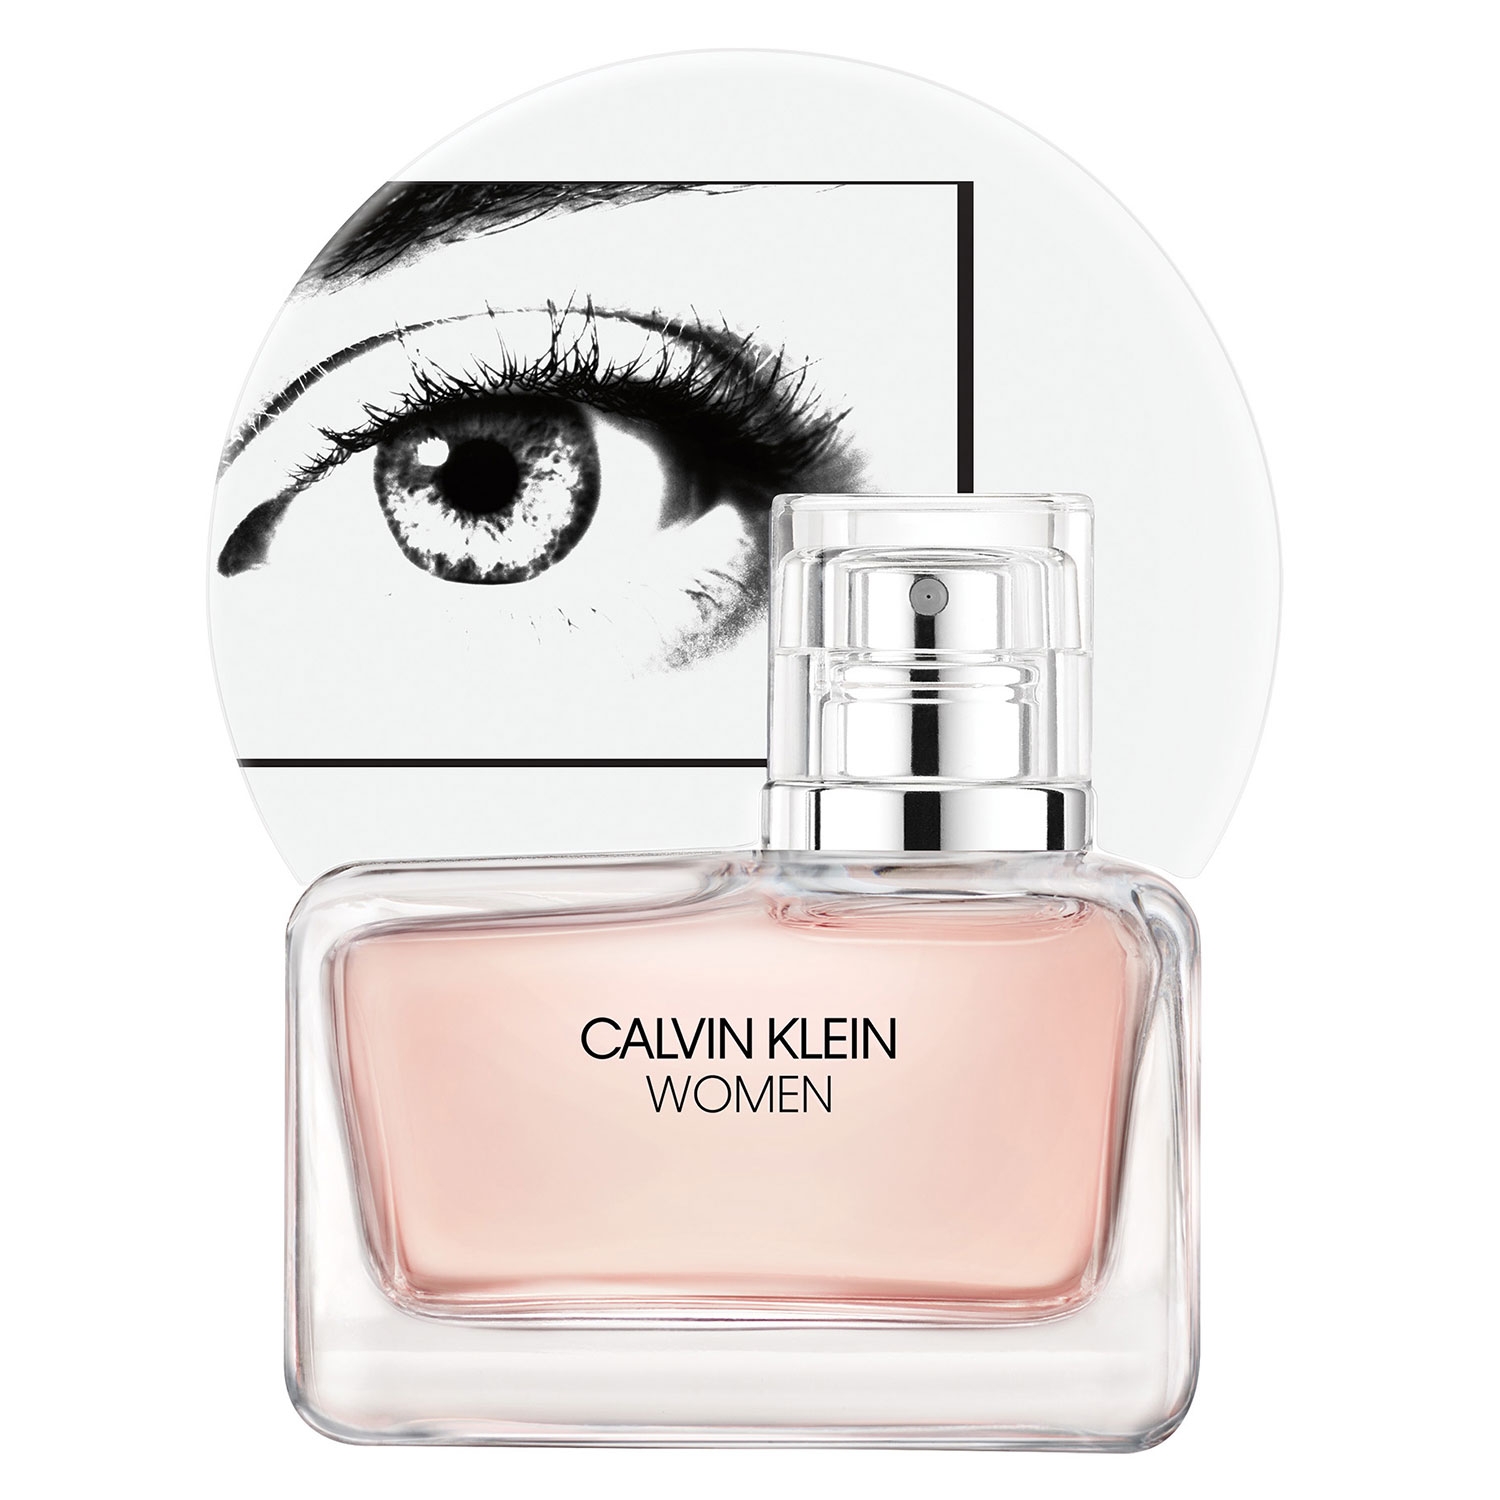 Produktbild von Calvin Klein Women - Eau de Parfum